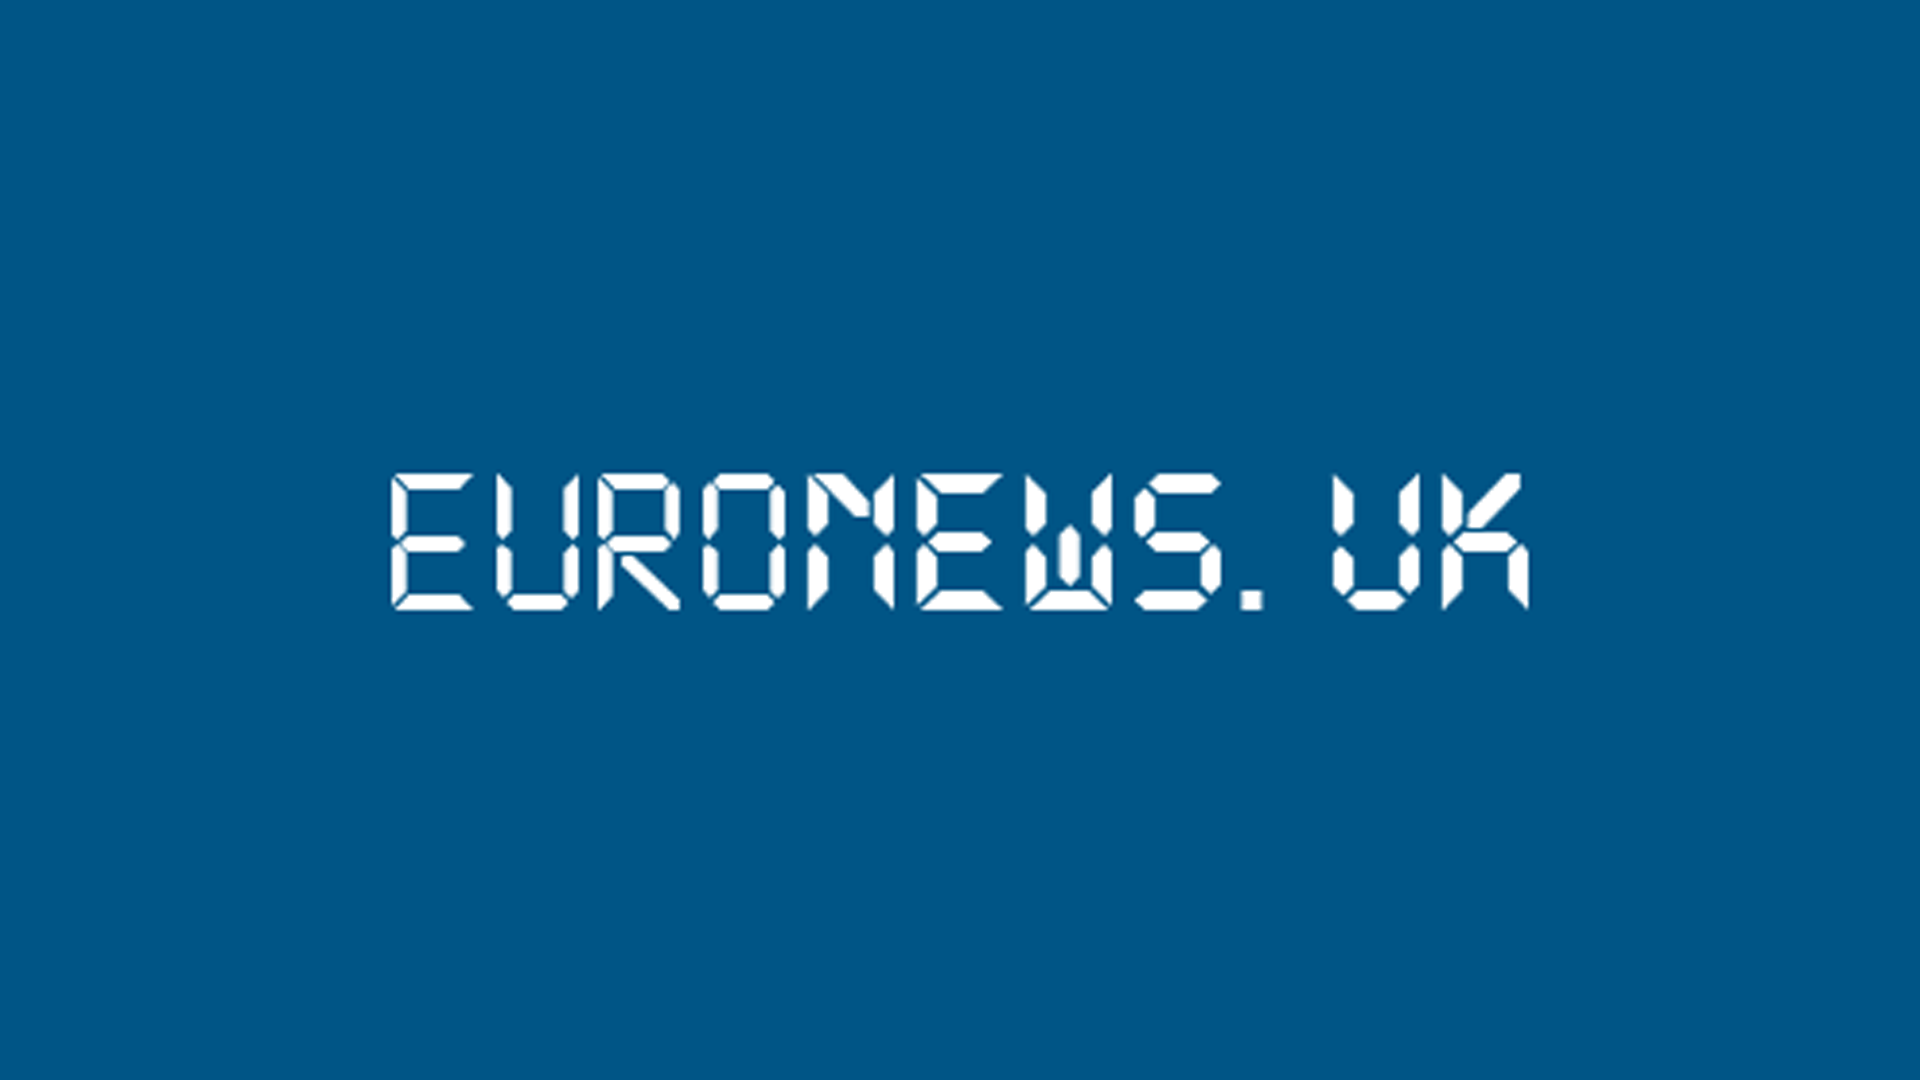 Euronews UK